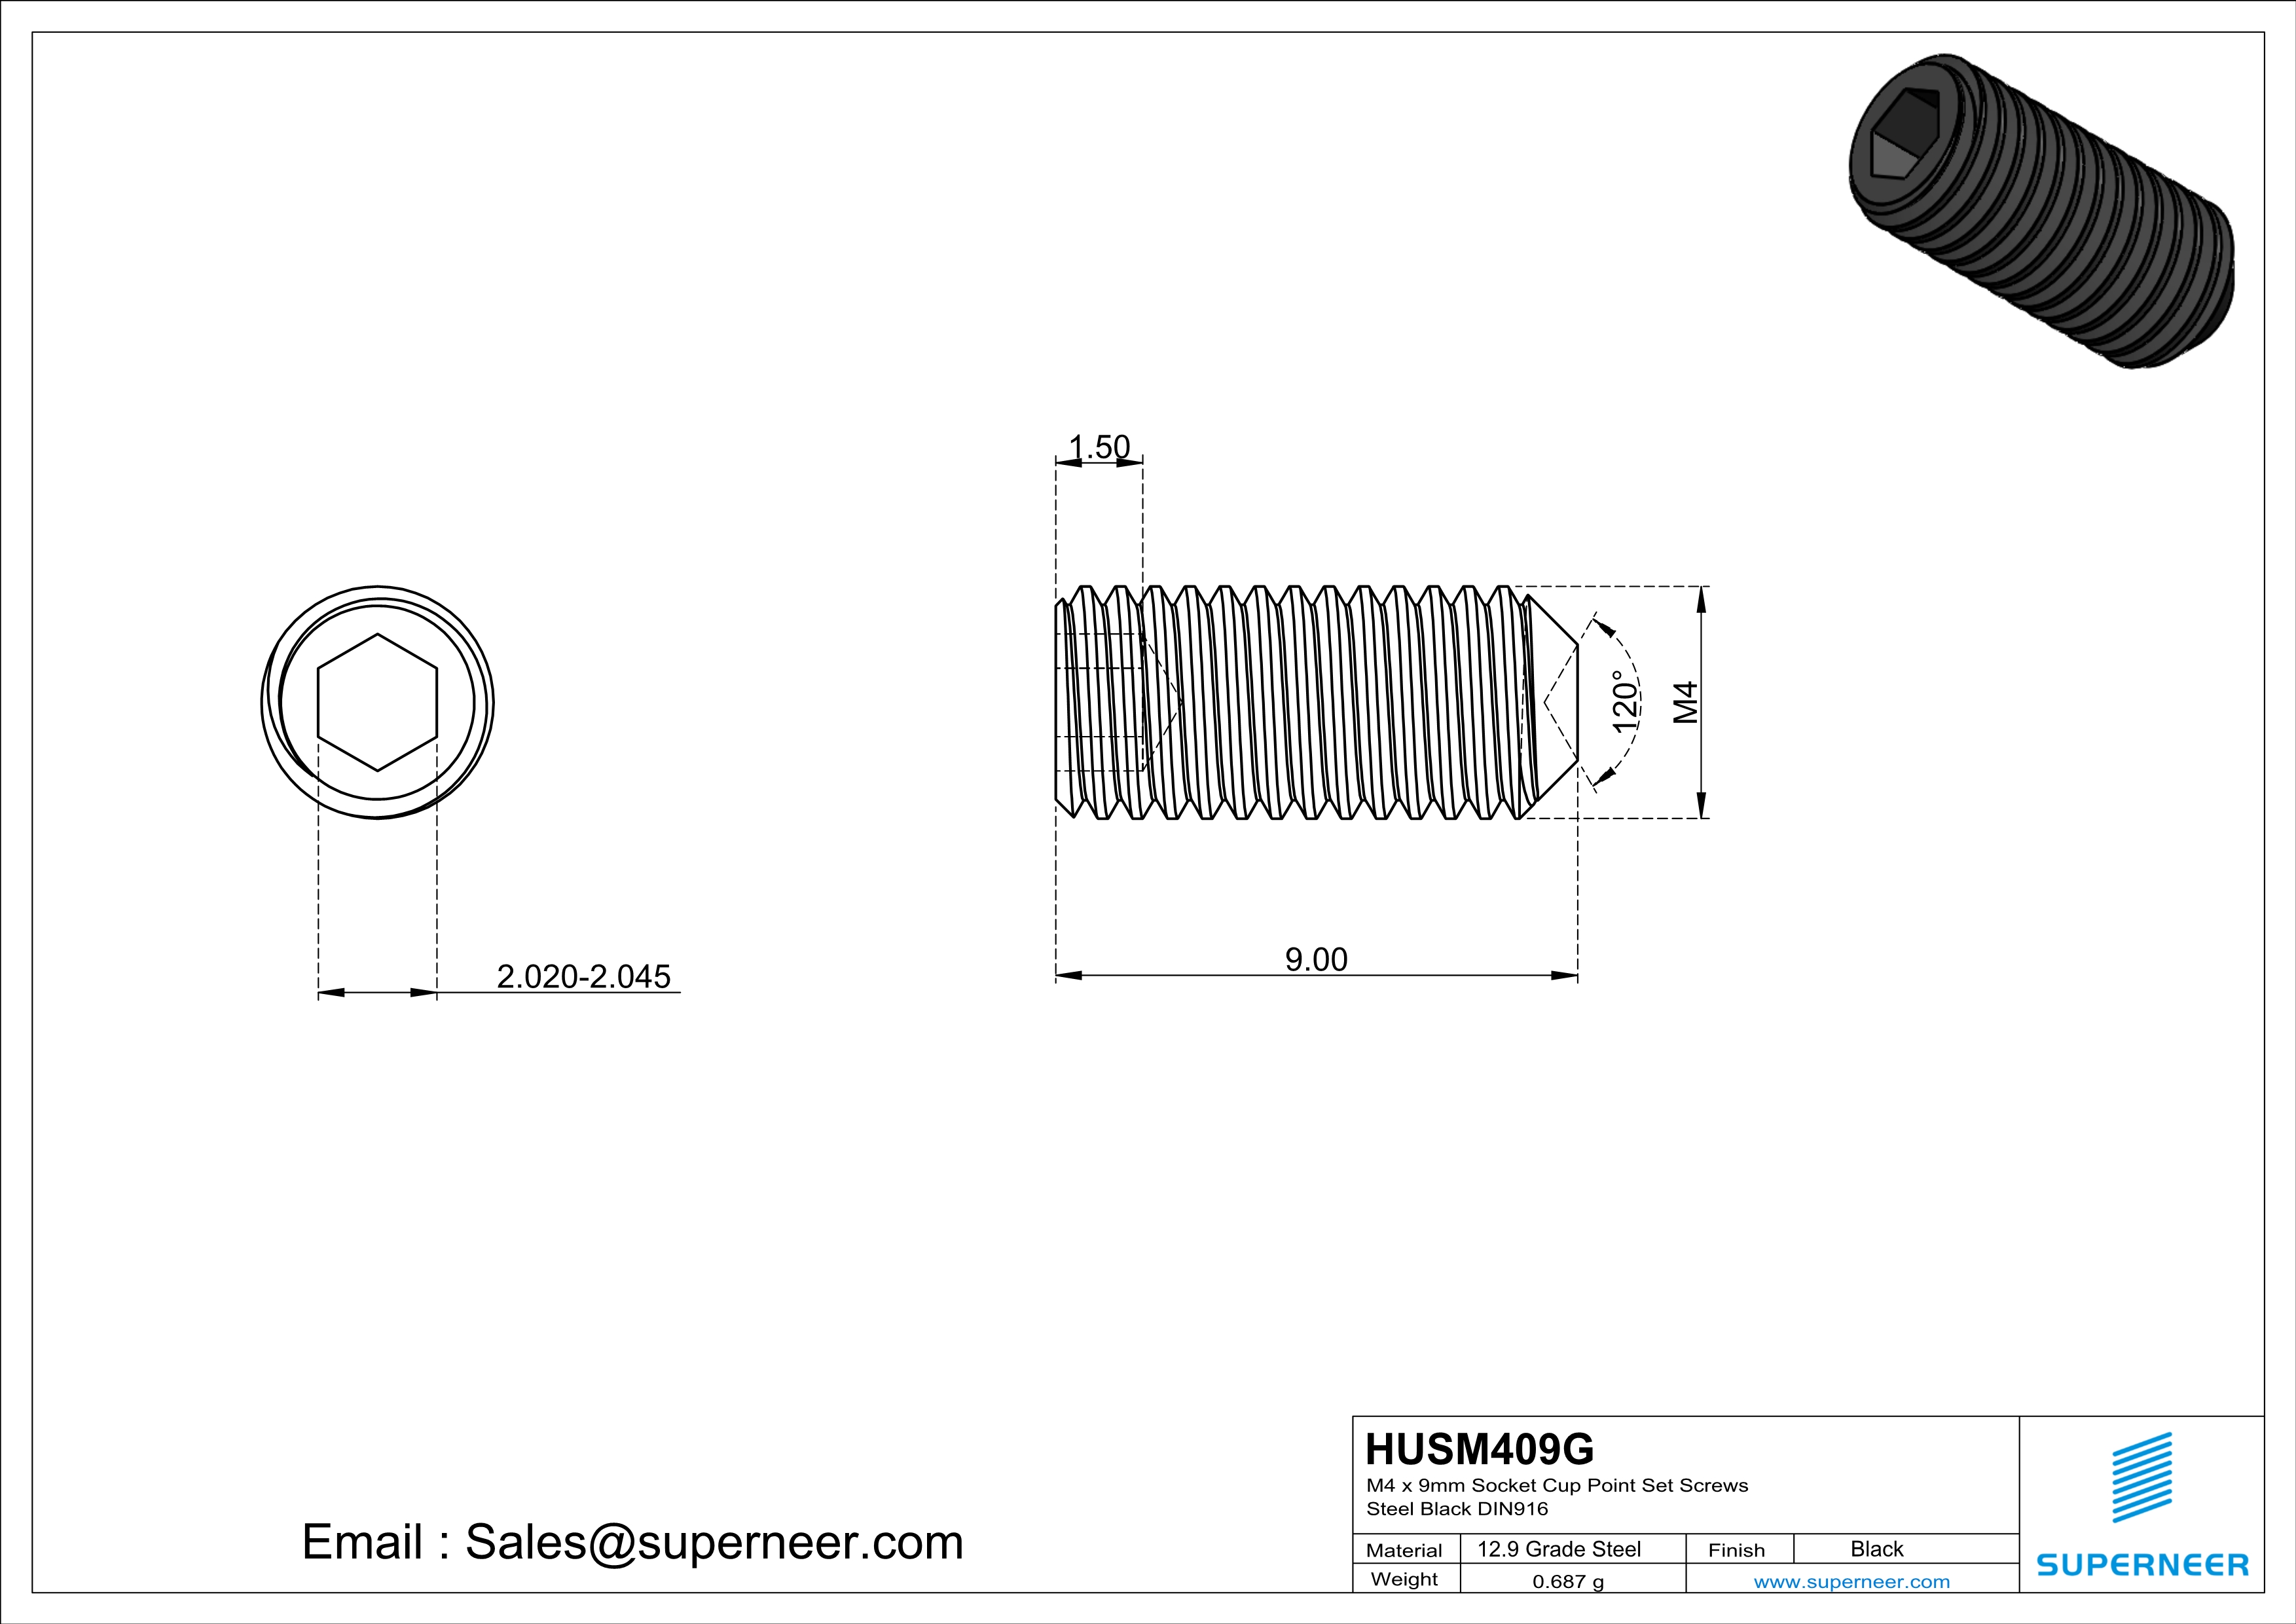 M4 x 9mm Socket Cup Point Set Screws 12.9 Carbon Steel Black DIN916